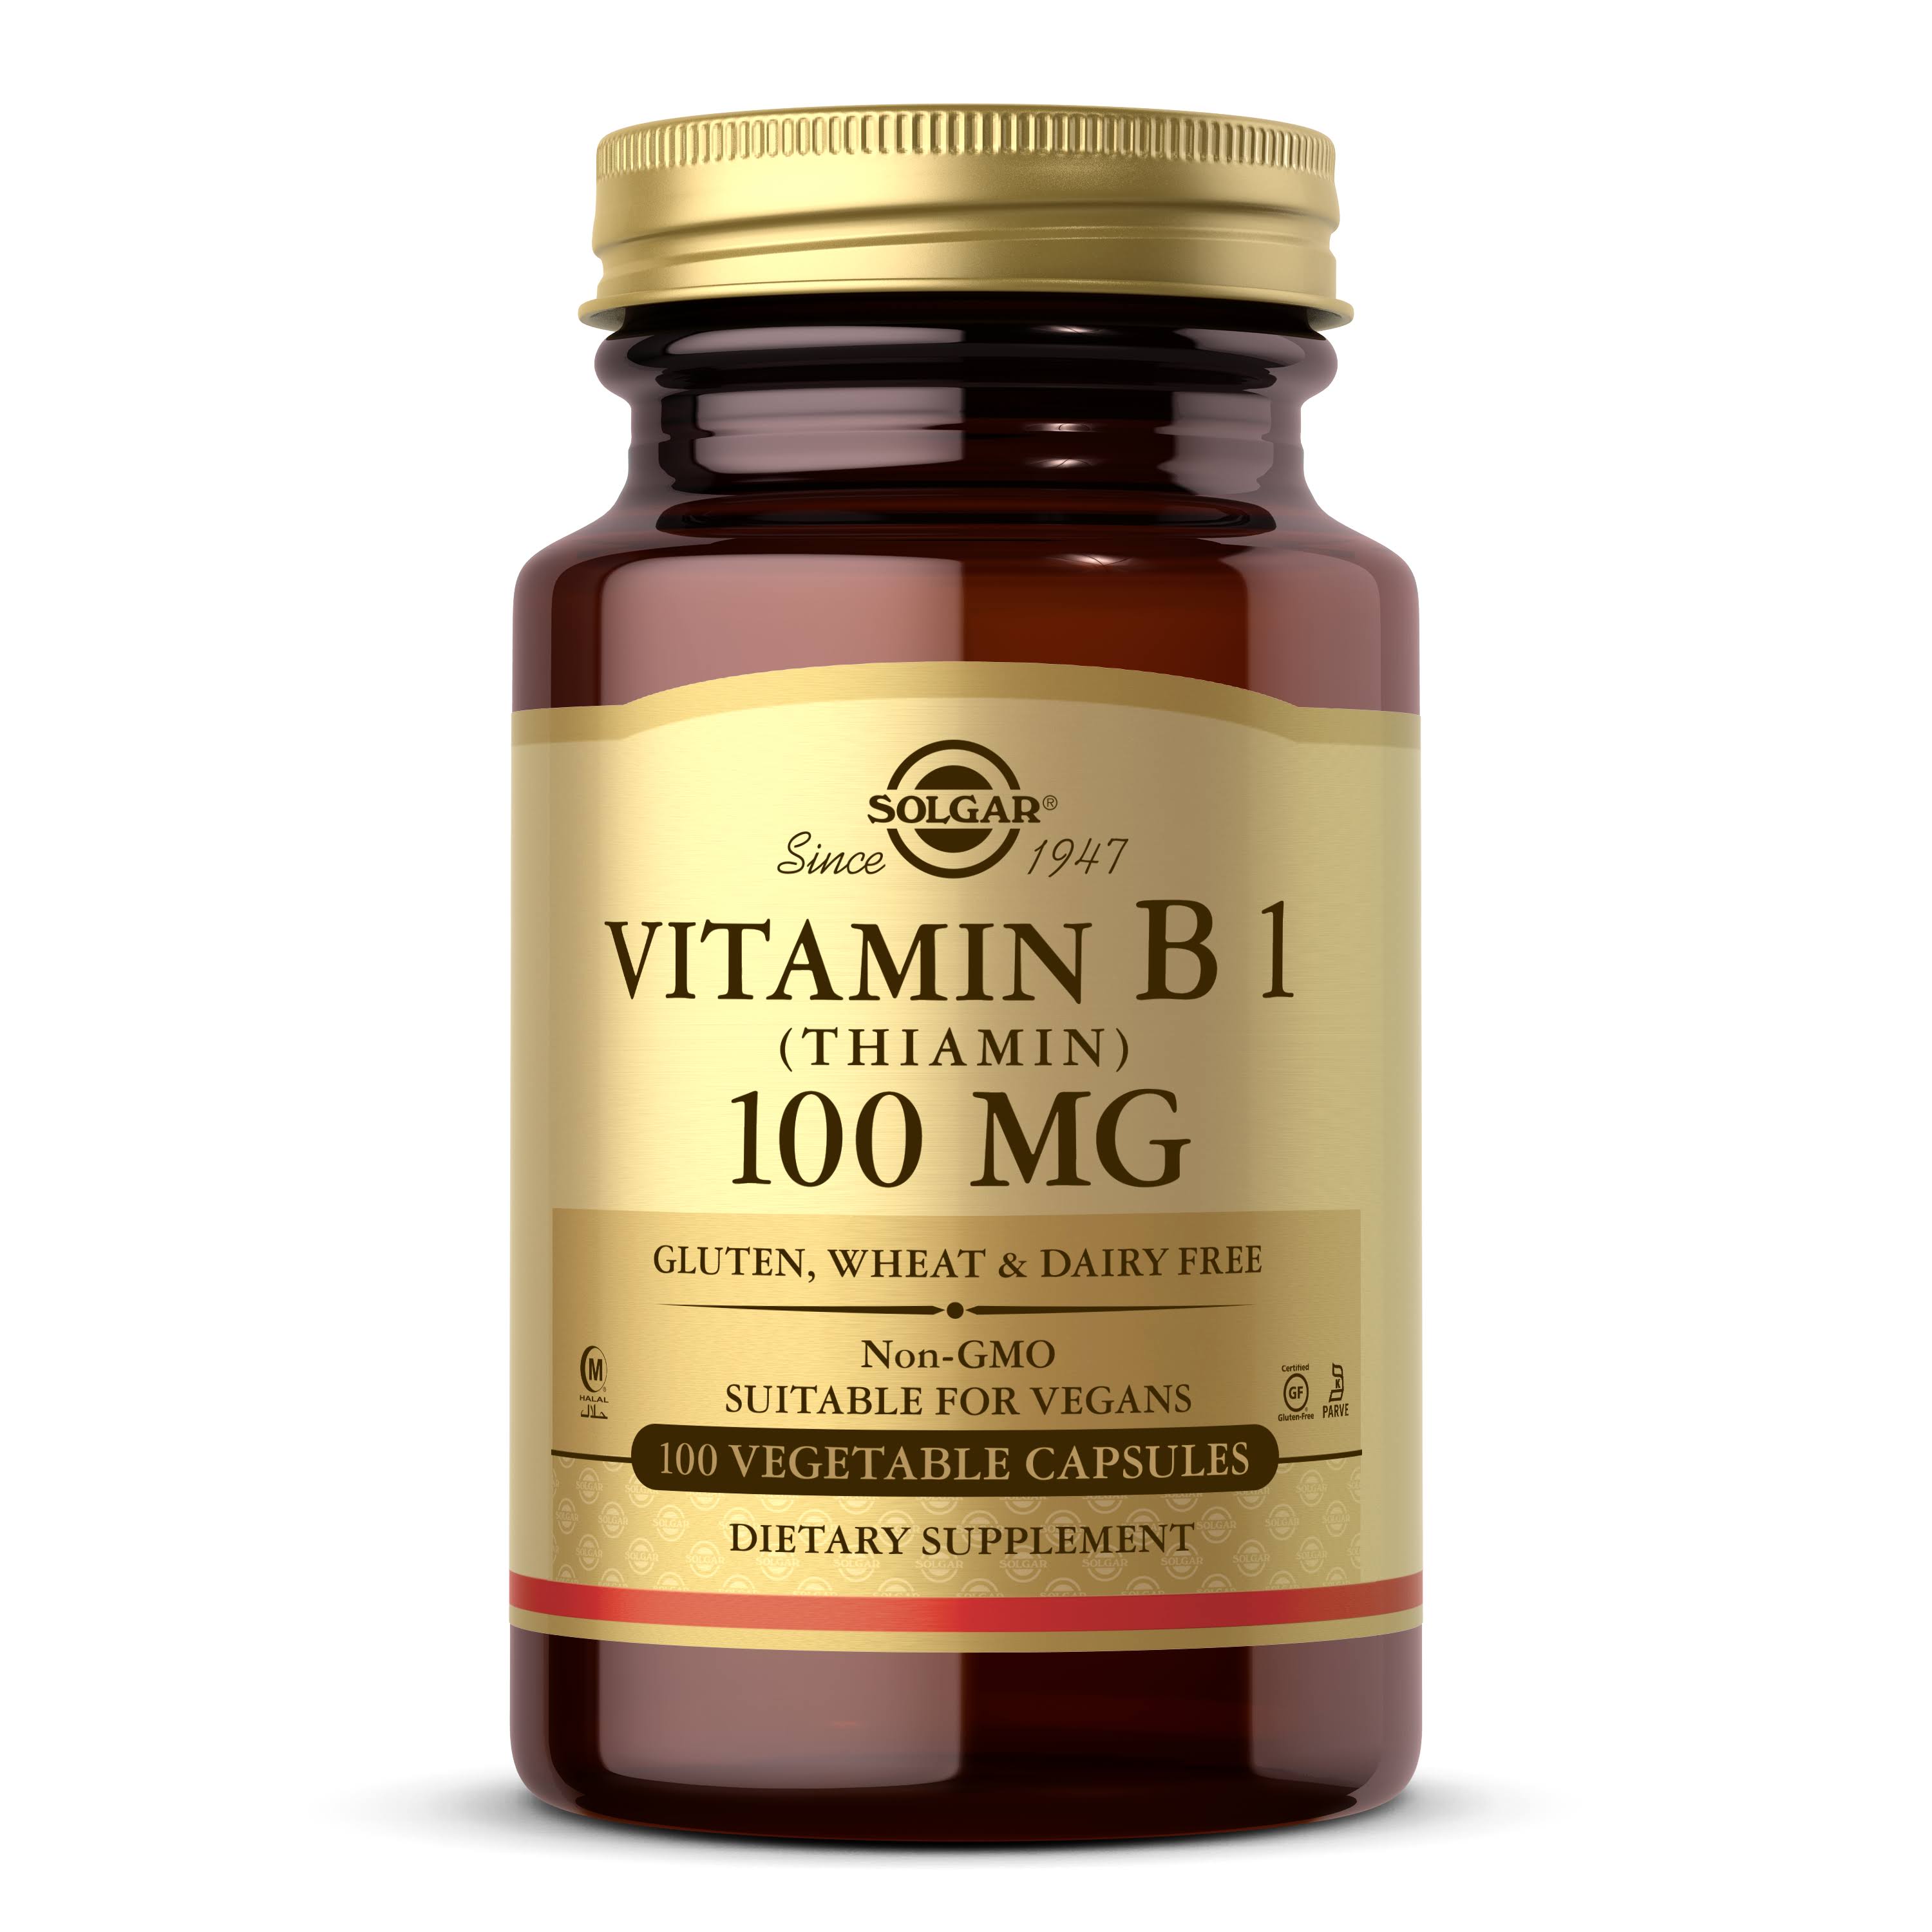 Solgar Vitamin B1 100 mg - 100 capsules